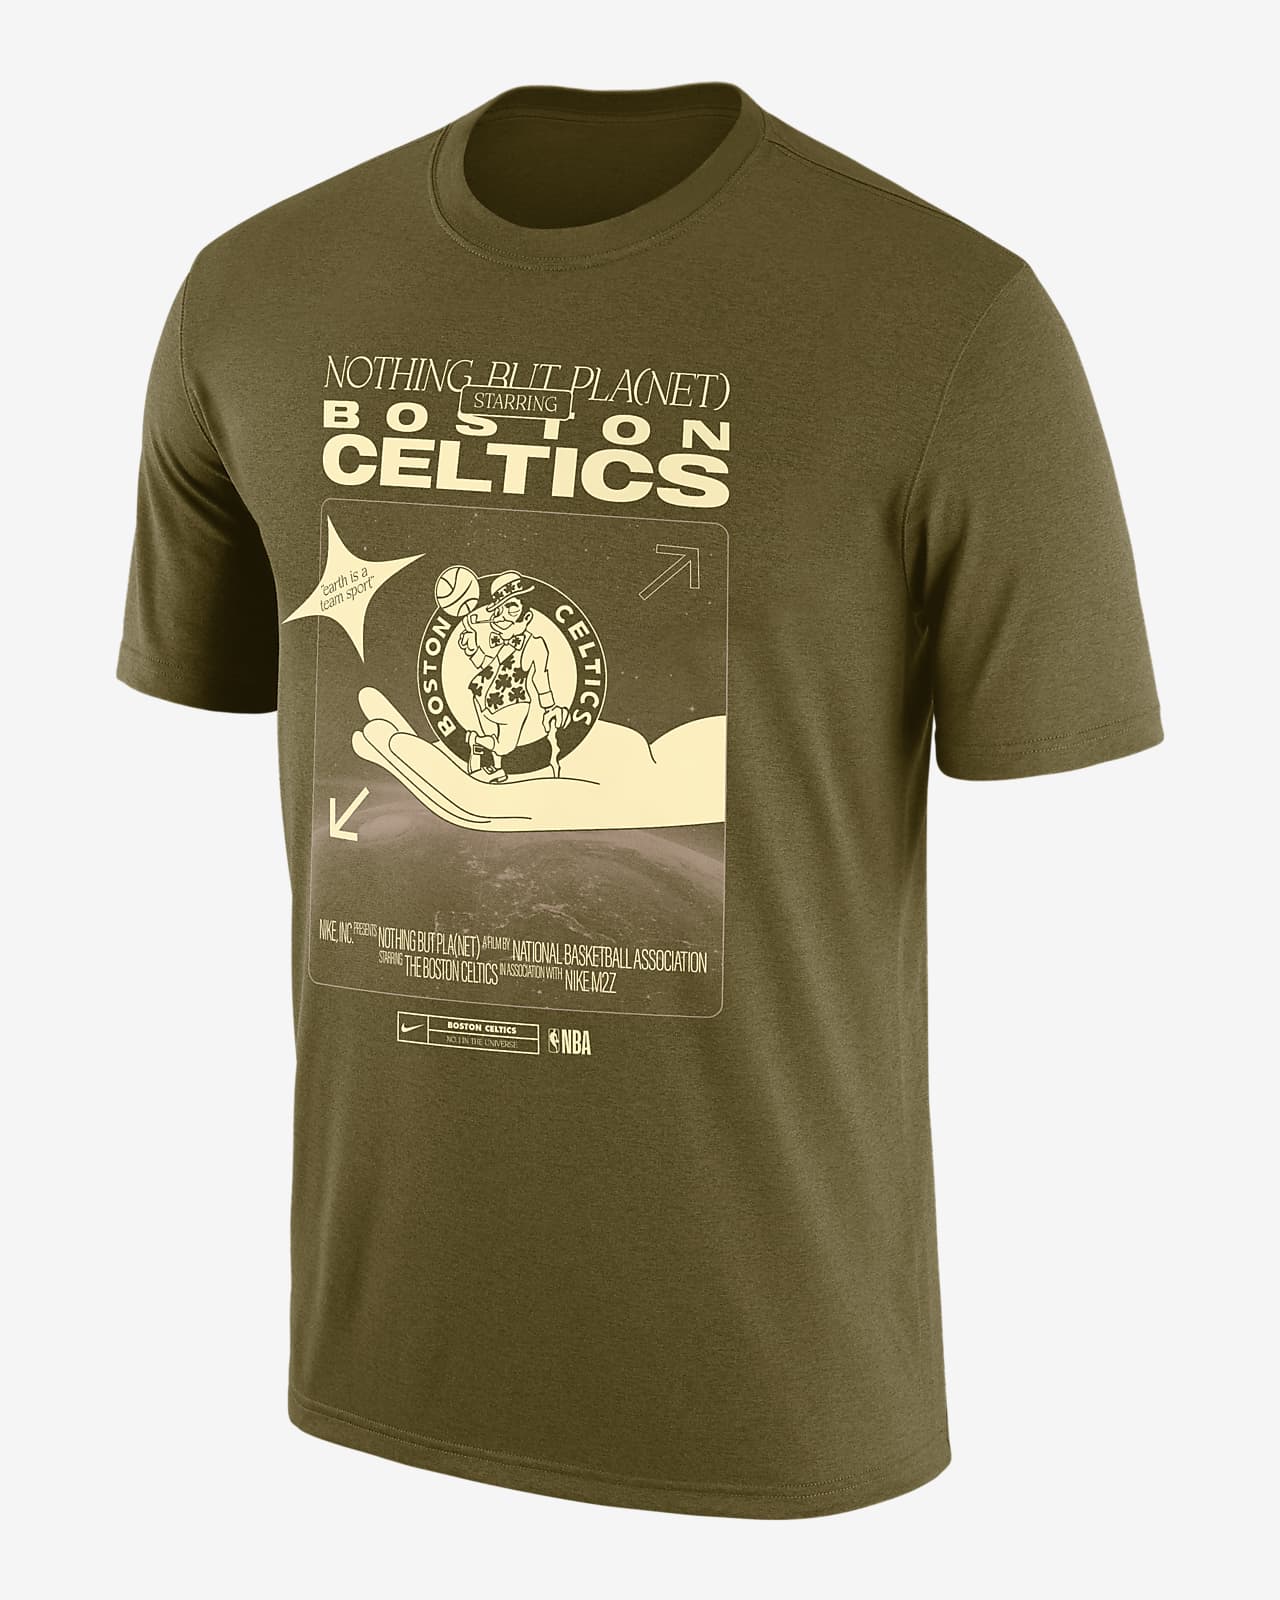 Standard Fit Boston Celtics Licensed Long Sleeve Sweatshirt